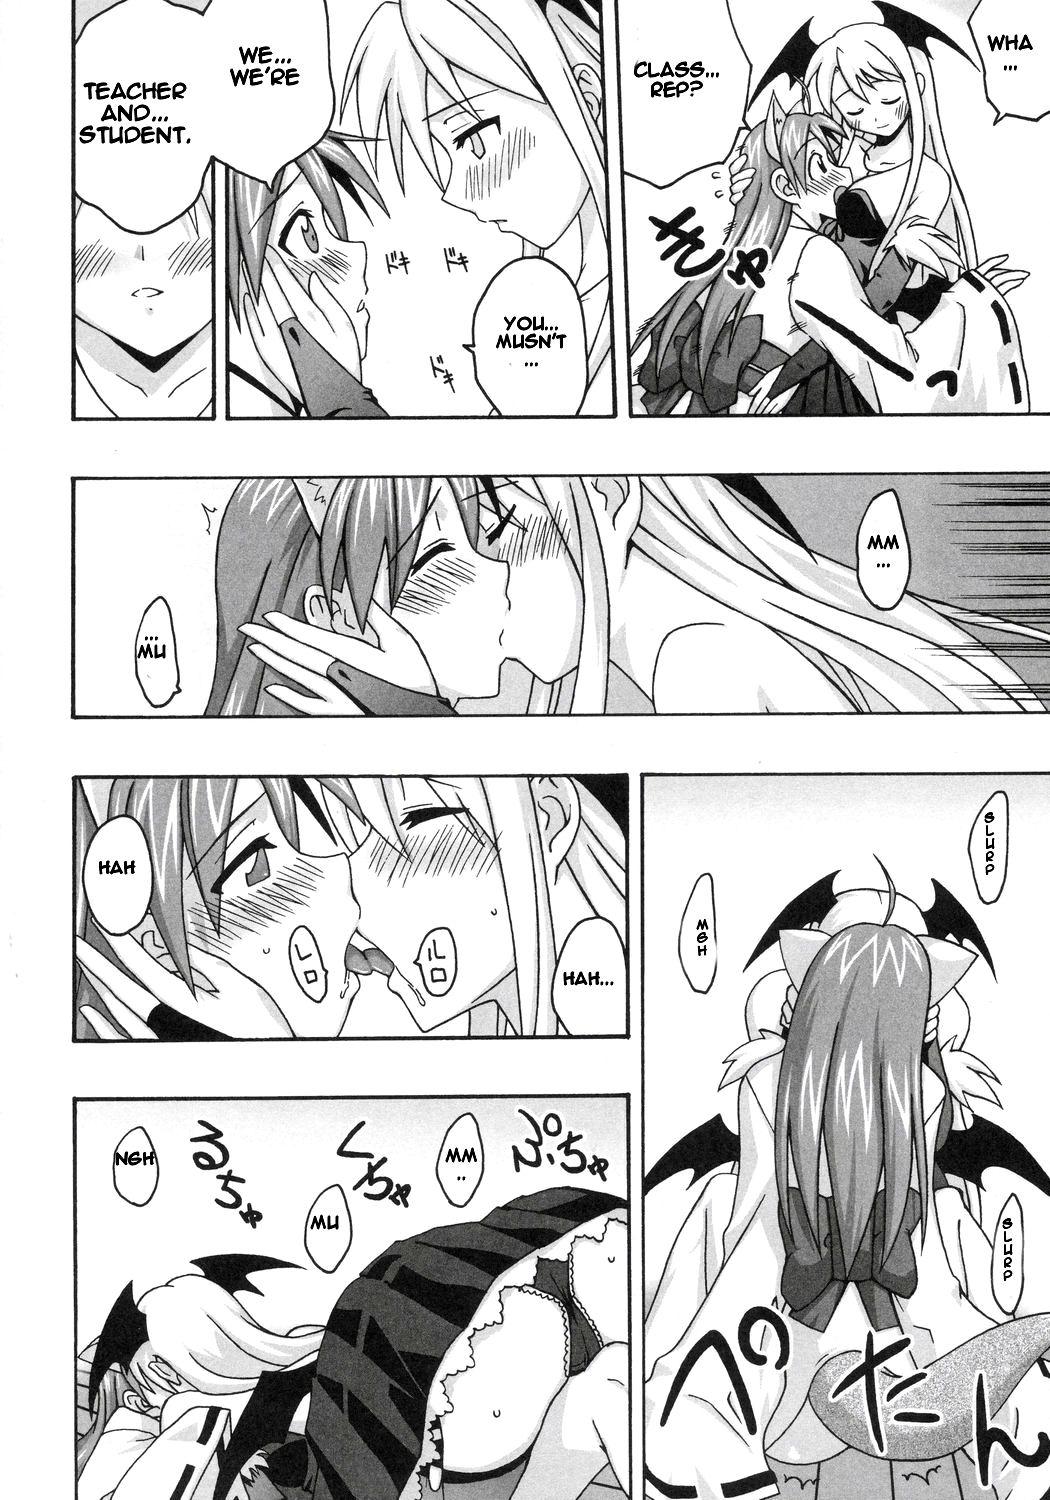 Pussyfucking Ura Mahou Sensei Jamma! 8 - Mahou sensei negima Fantasy Massage - Page 11